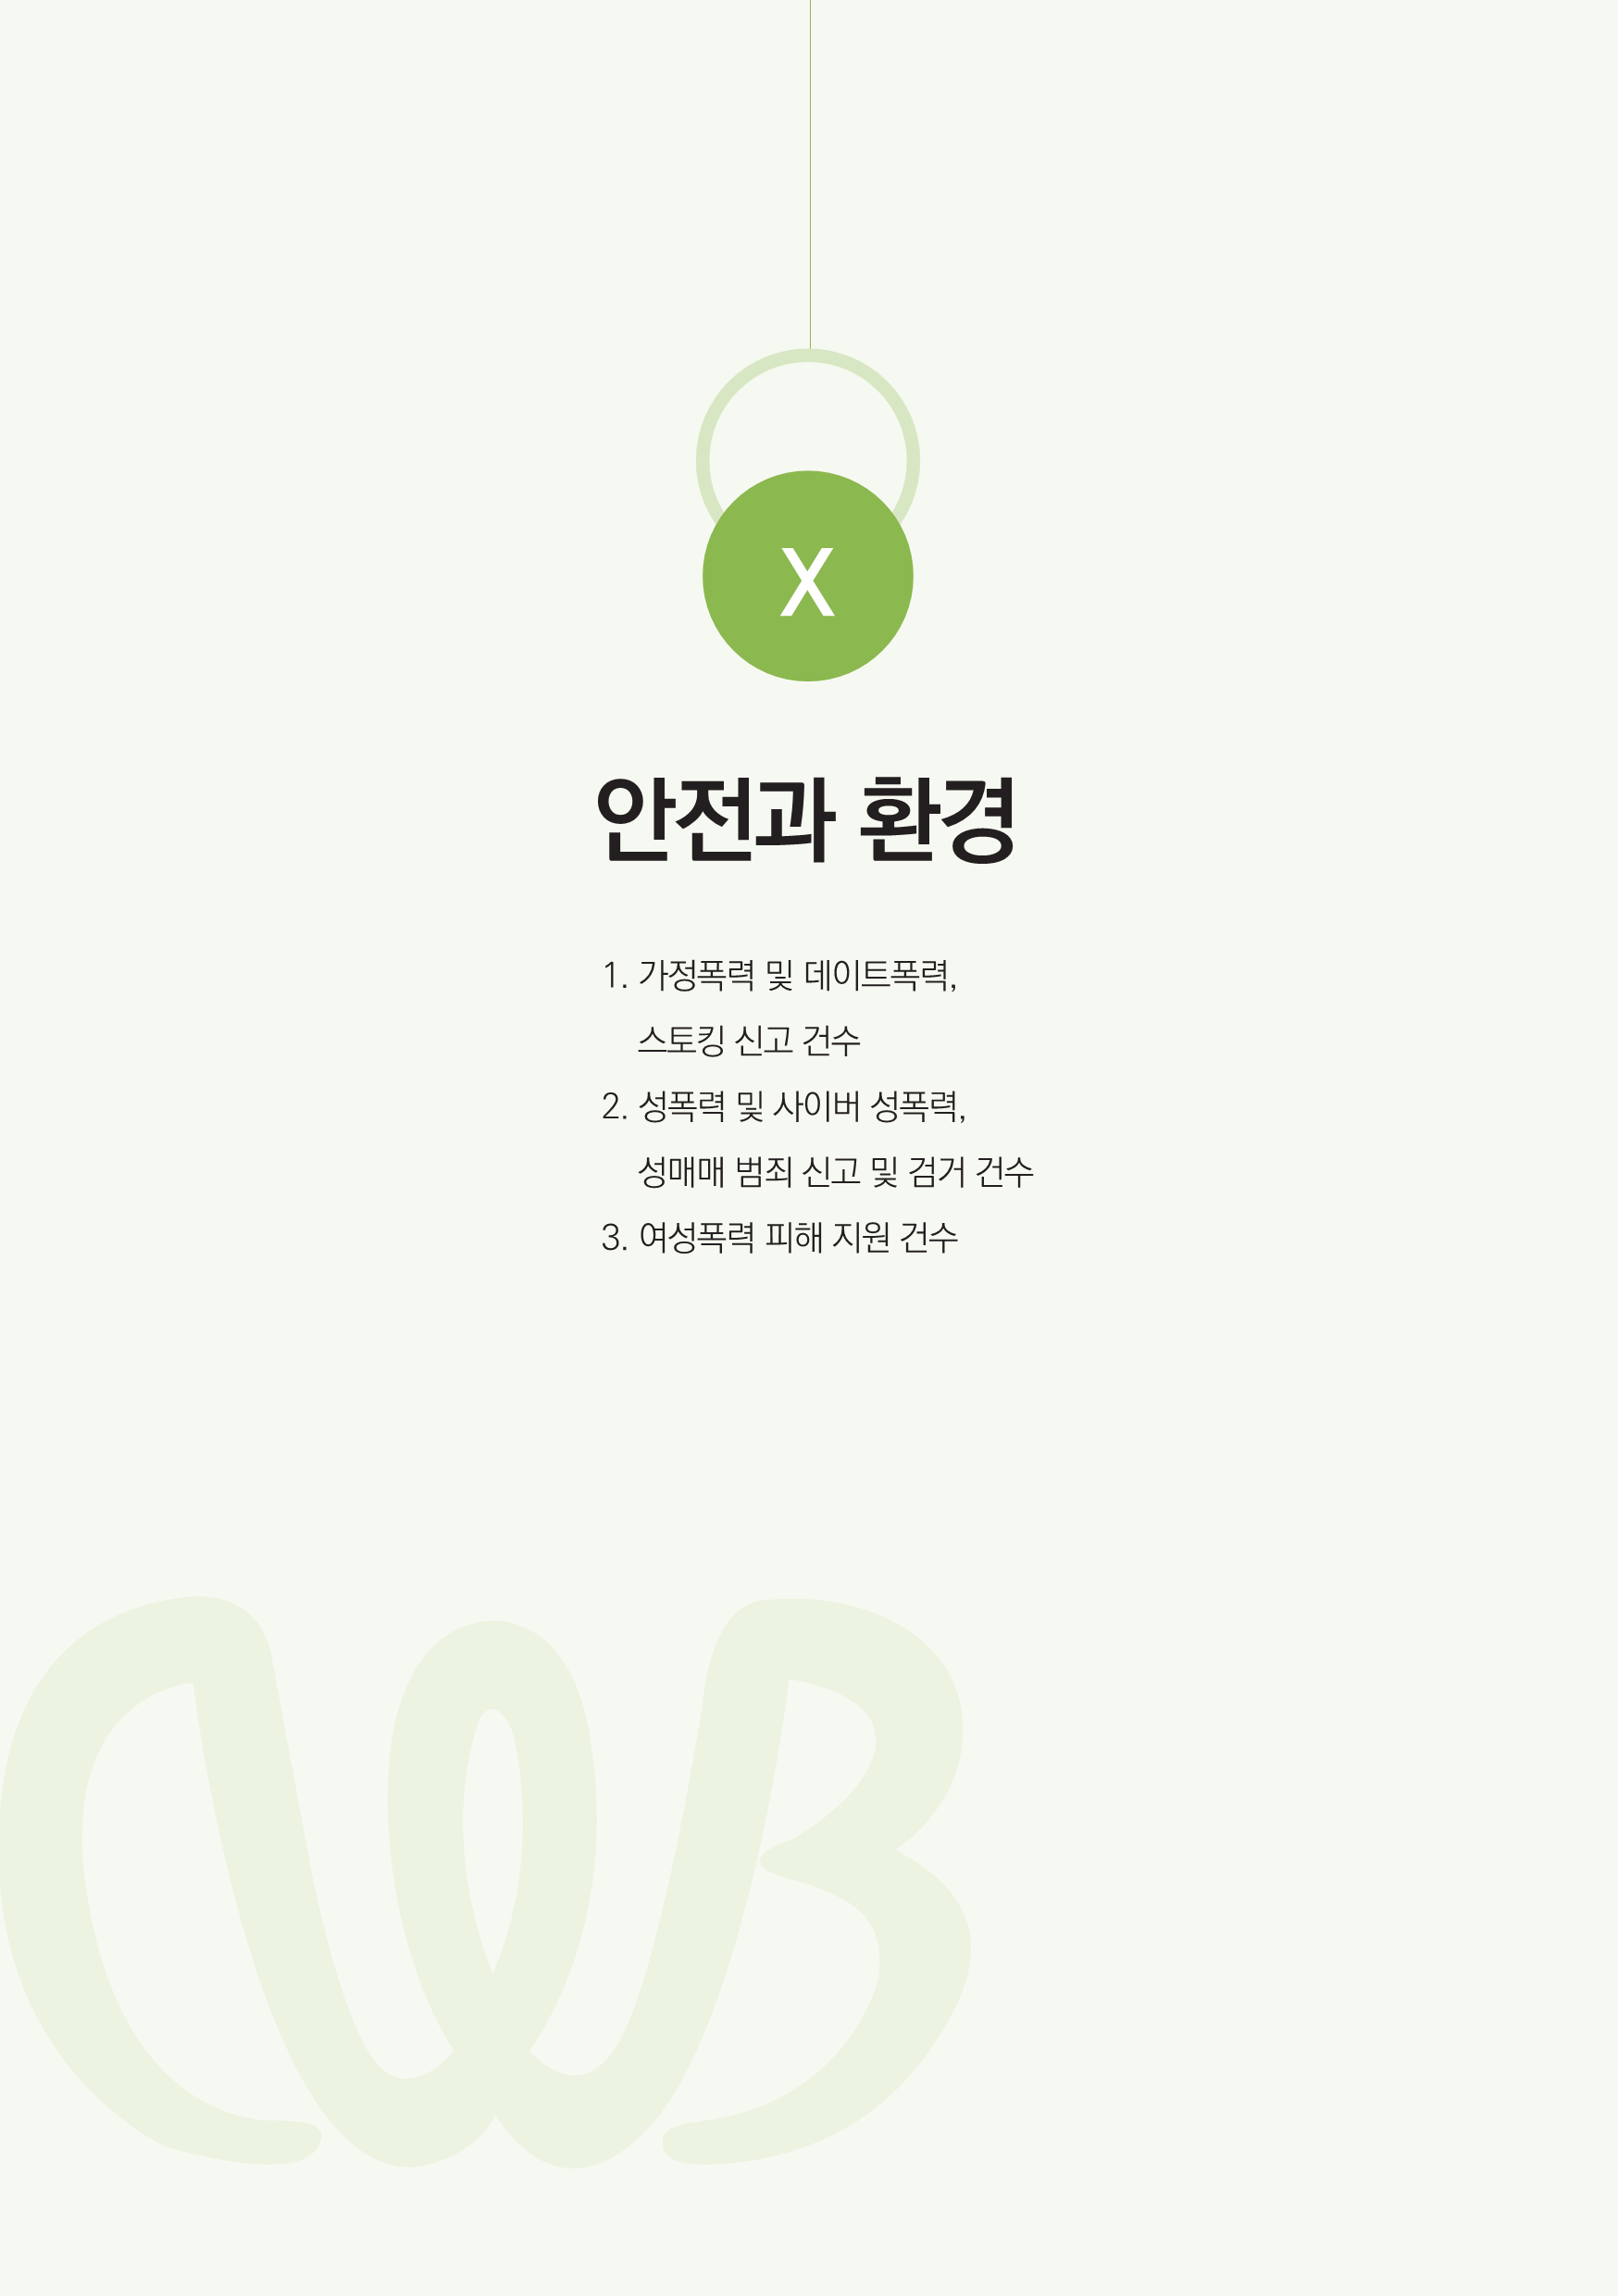 충북여성재단-성인지통계(인포)_웹용_69.png